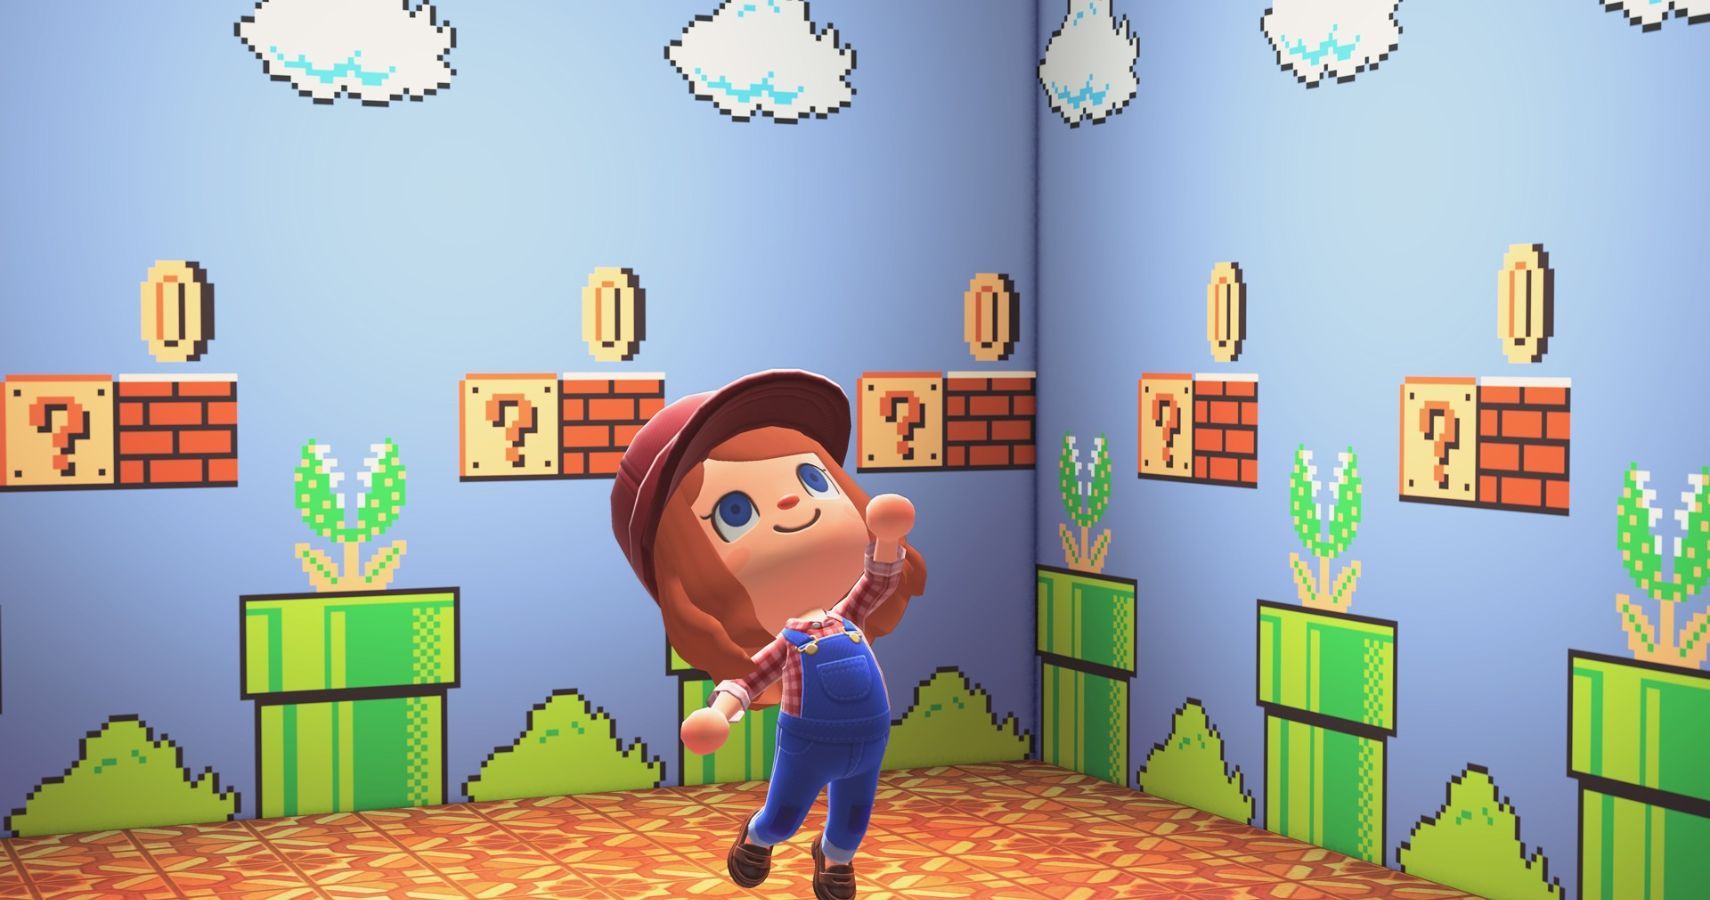 Wallpaper  Super Mario Land 2  Rewards  My Nintendo